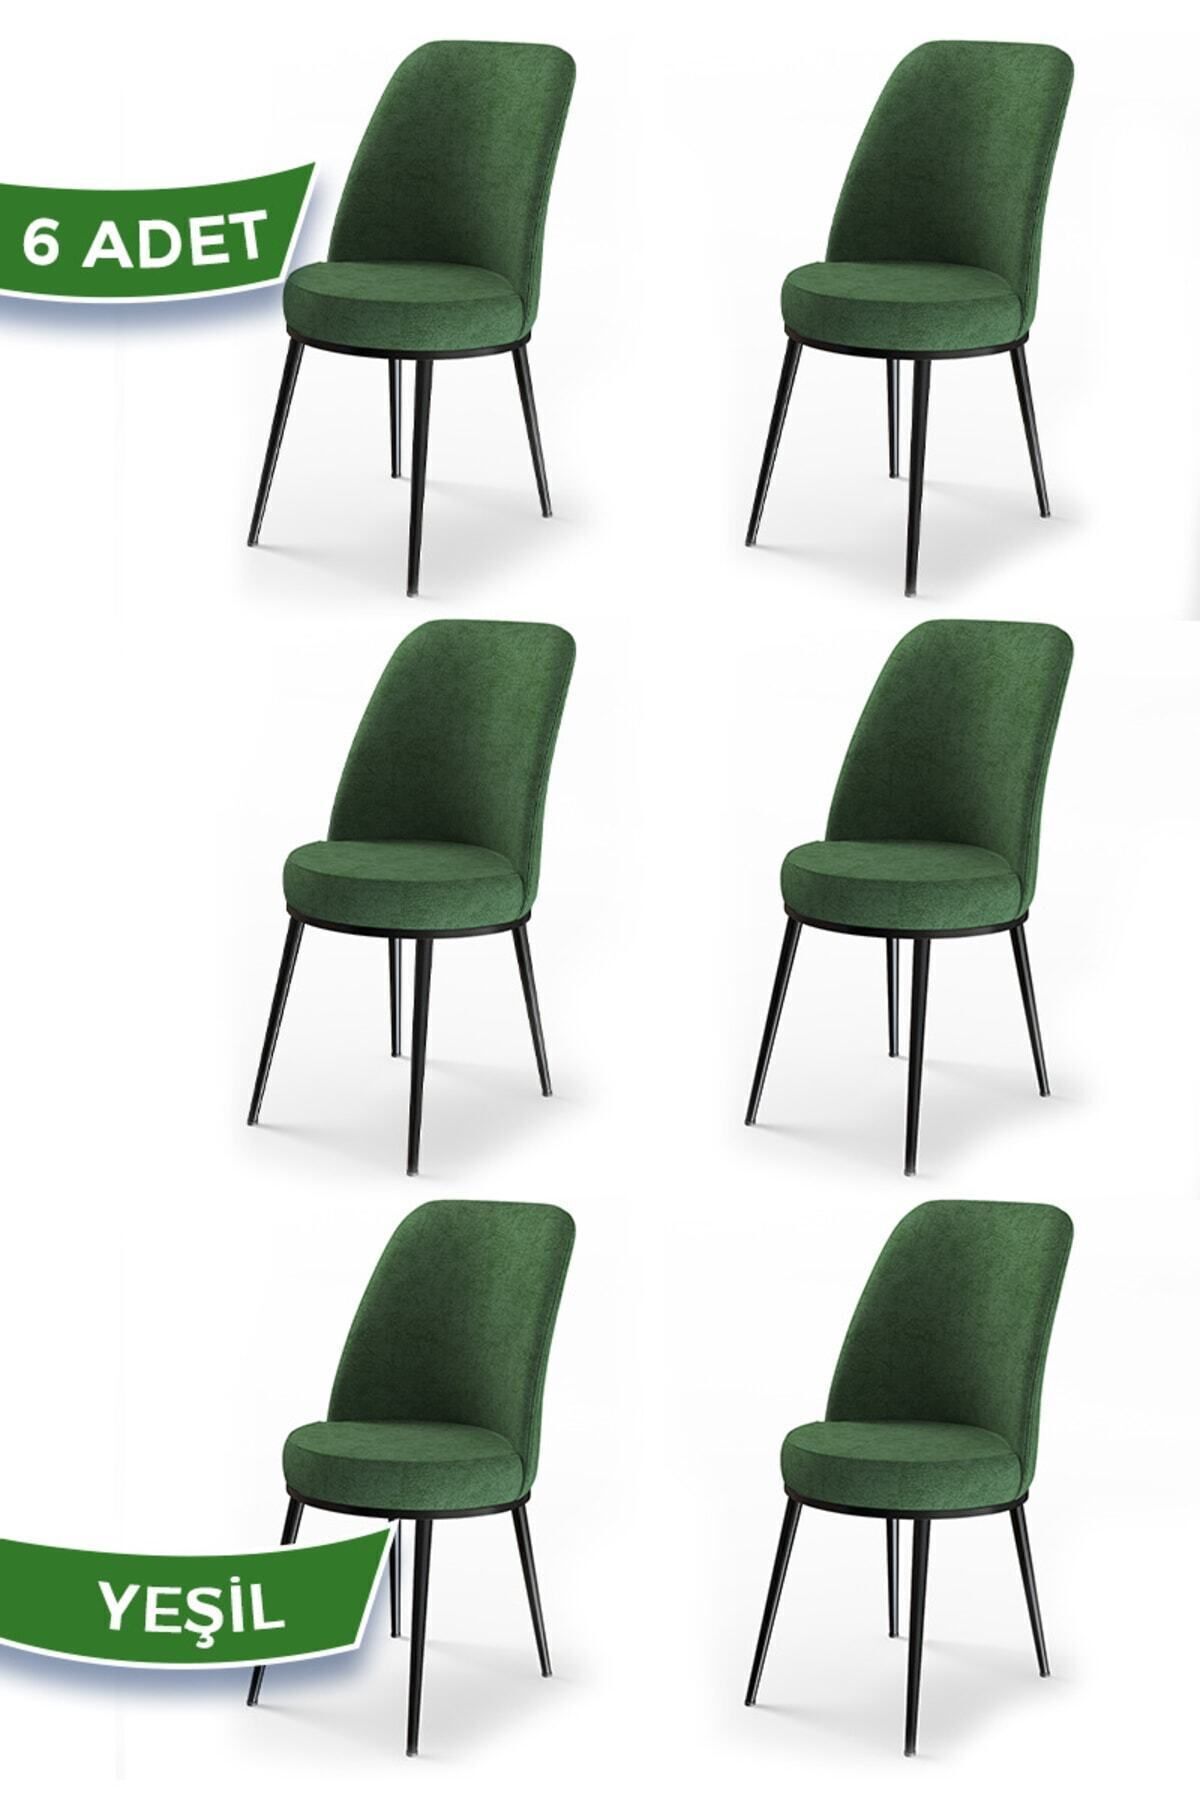 Canisa Concept Dexa Serisi Yeşil Renk 6 Adet Sandalye, Renk Yeşil, Ayaklar Siyah